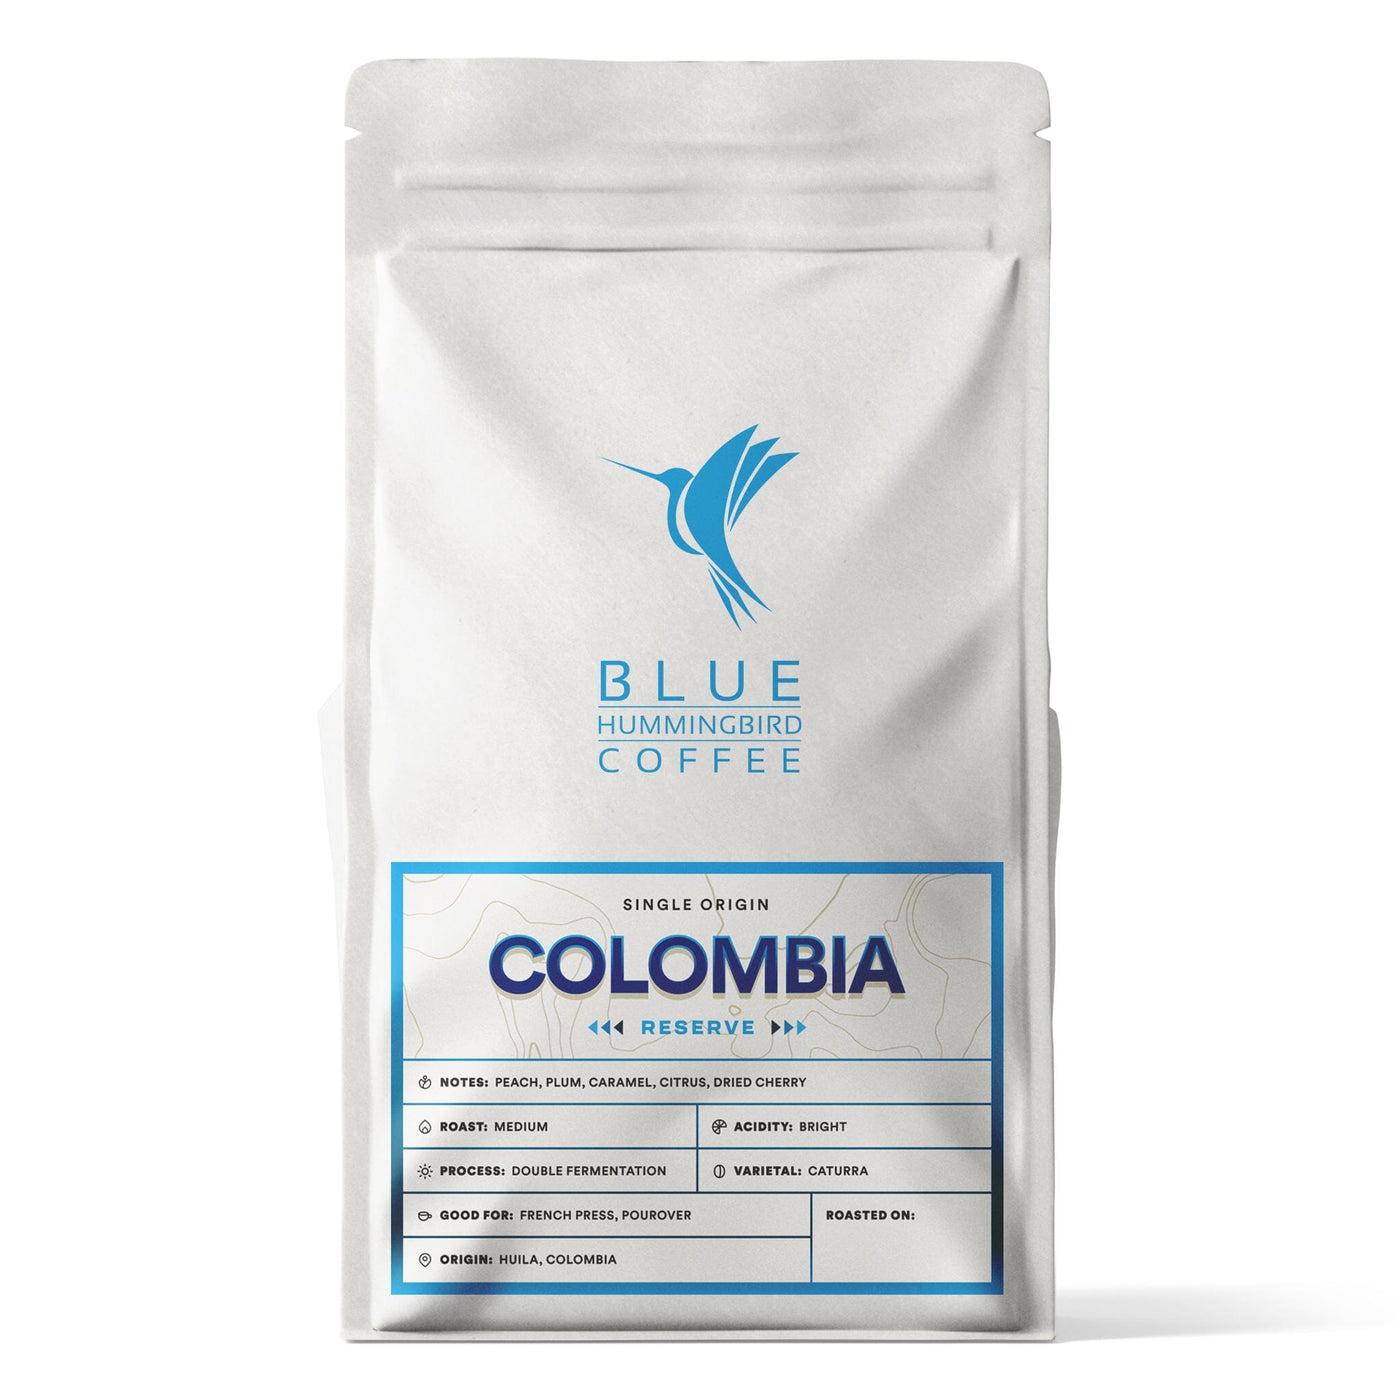 Colombia Pitalito Double Fermentation